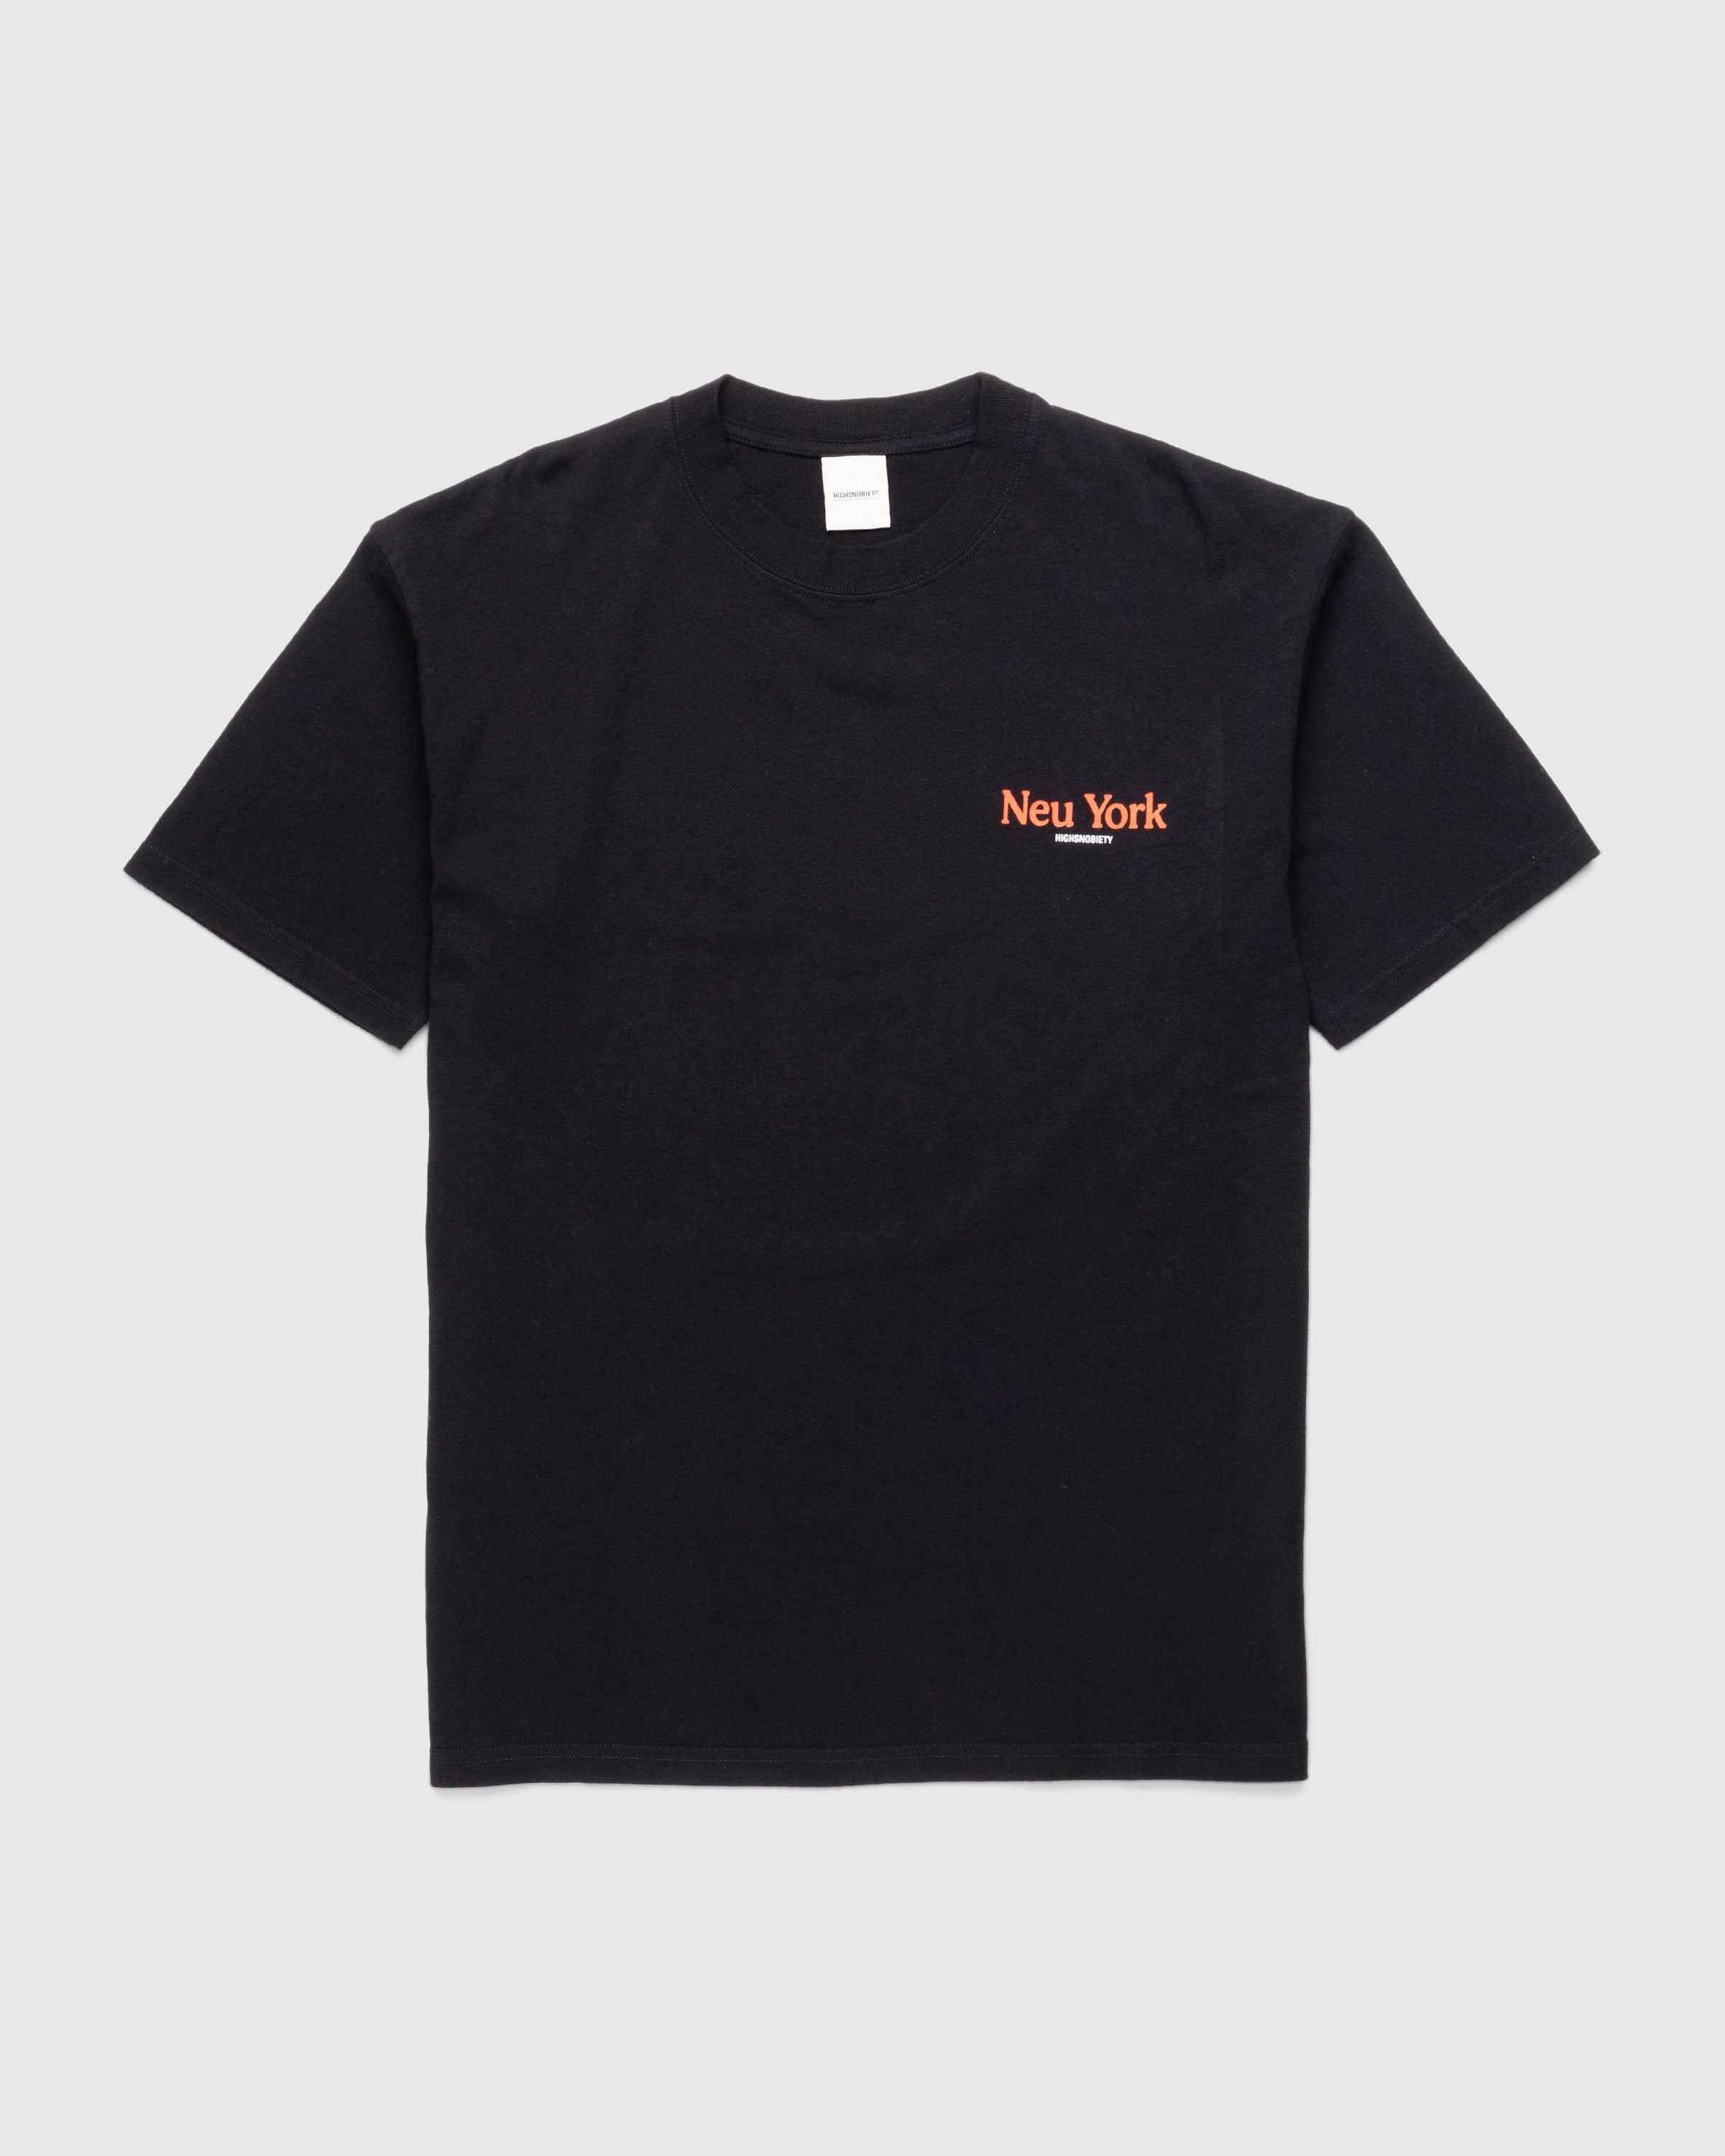 Highsnobiety - Neu York Black T-Shirt - Clothing - Black - Image 2